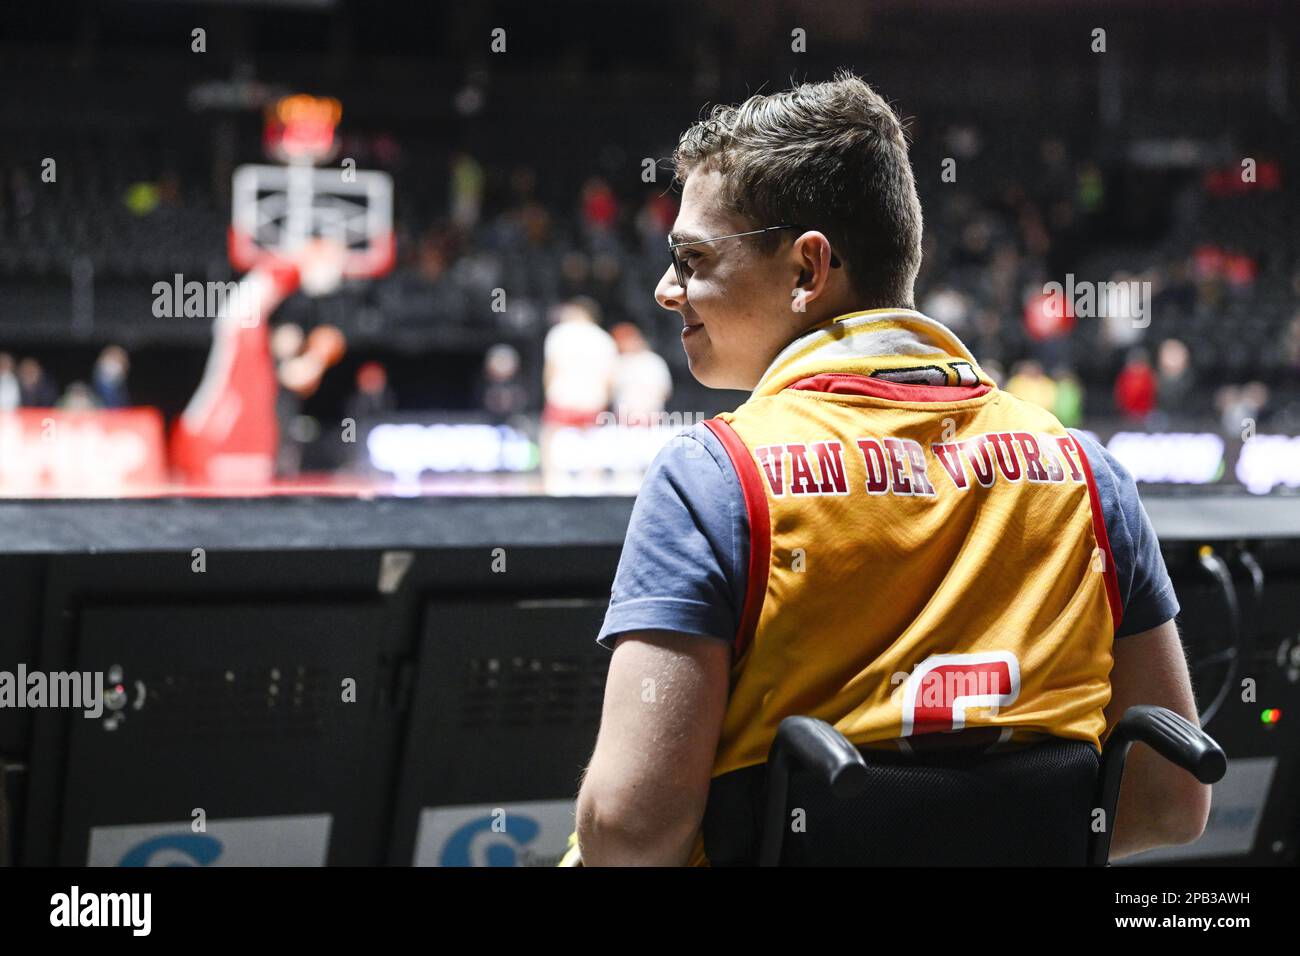 Le supporter d'Ostende photographié avant un match de basket-ball entre Anvers Giants et ostende, dimanche 12 mars 2023 à Bruxelles, la finale de la coupe de basket-ball belge pour hommes. BELGA PHOTO TOM GOYVAERTS Banque D'Images